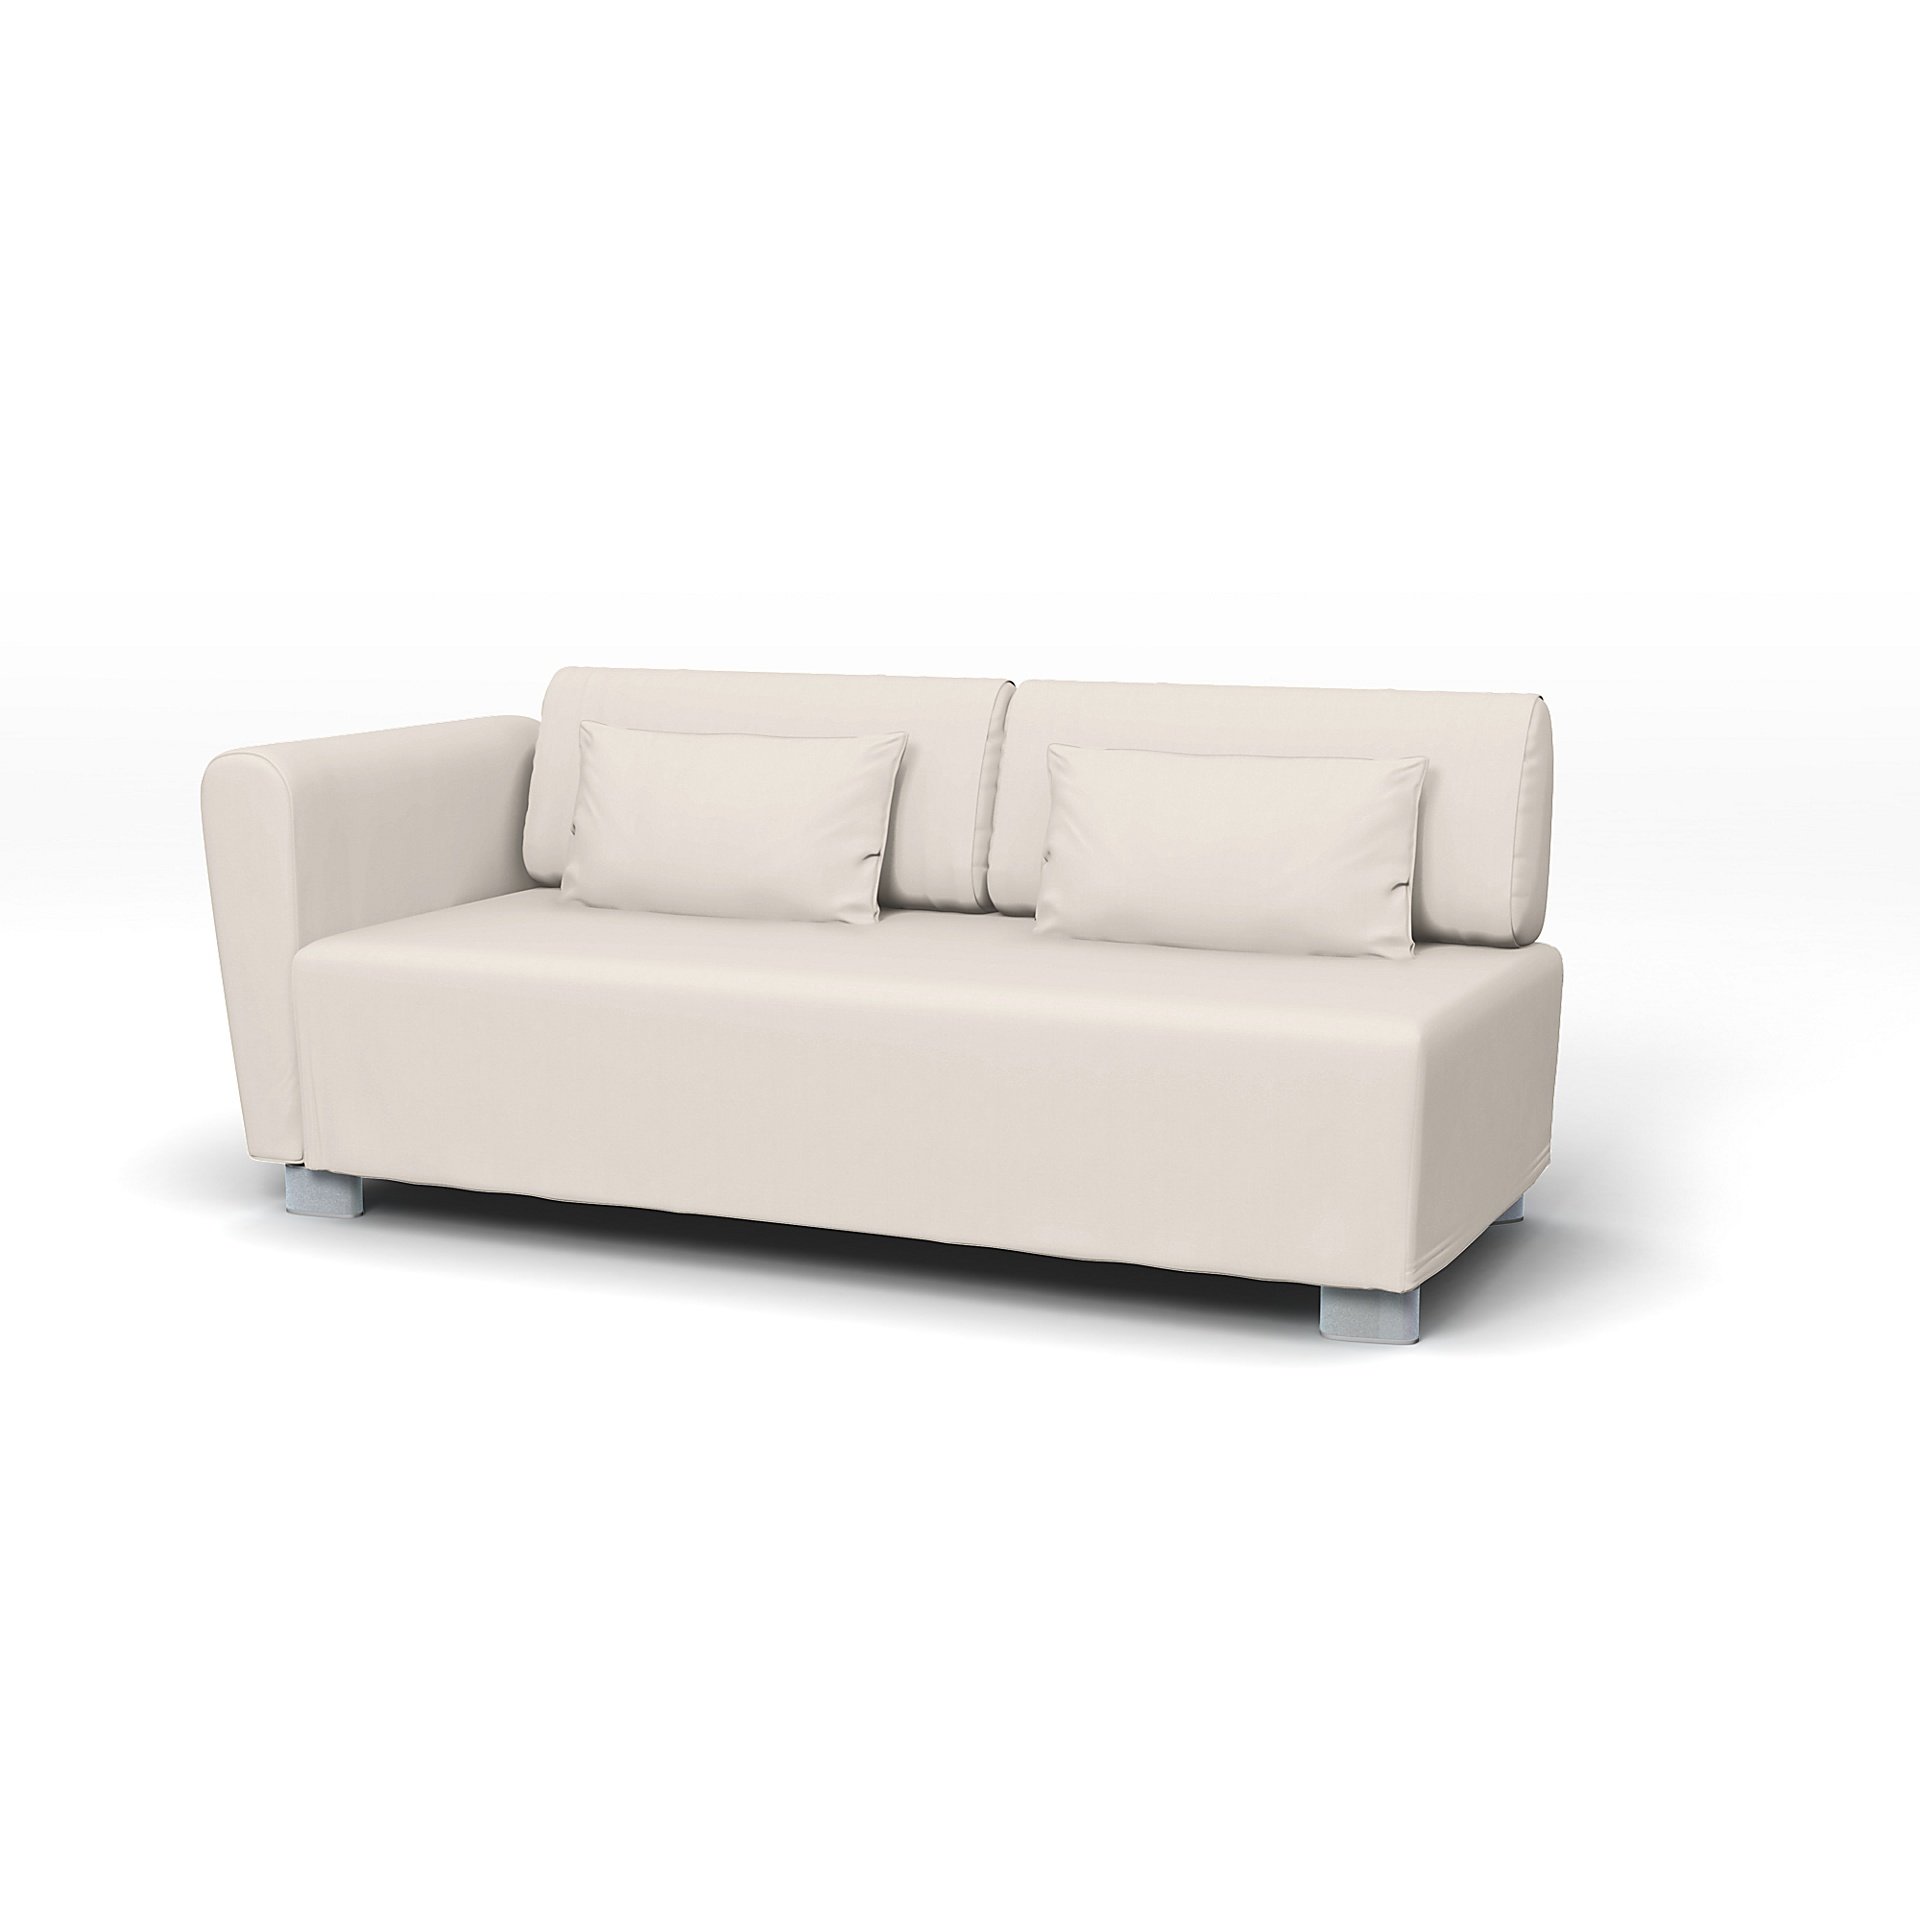 IKEA - Mysinge 2 Seater Sofa with Armrest Cover, Soft White, Cotton - Bemz